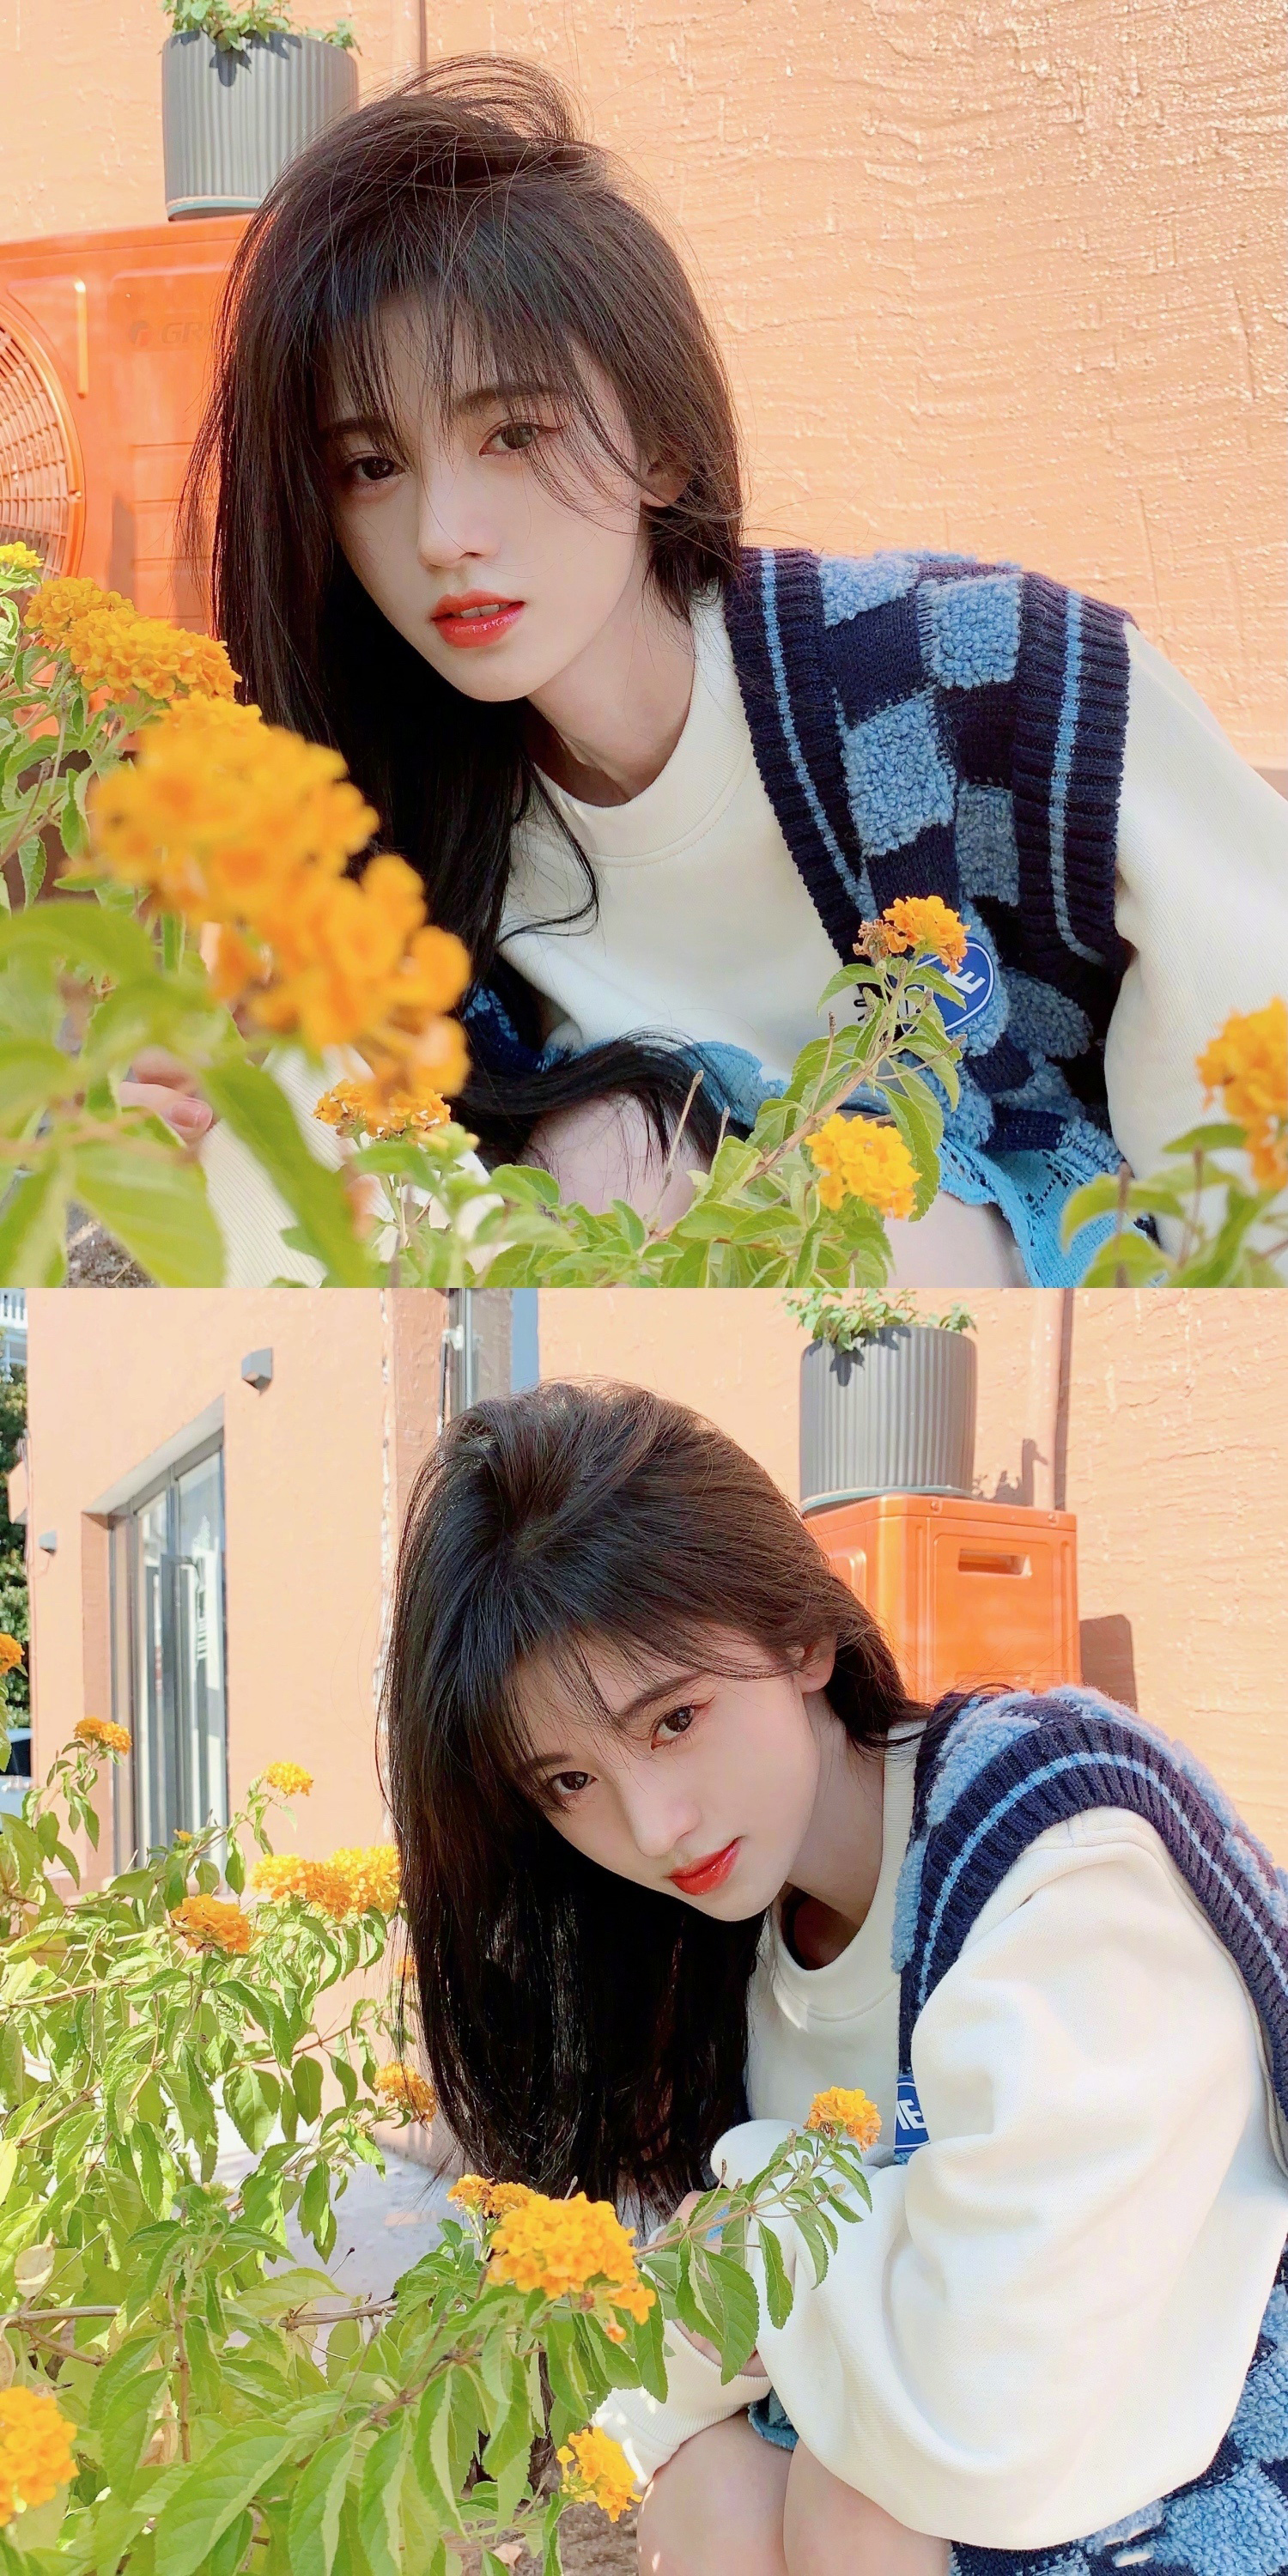 Kiku Ju Jingyi Actress Singer Women Chinese Asian Long Hair Sweater Yellow Flower 1500x3000